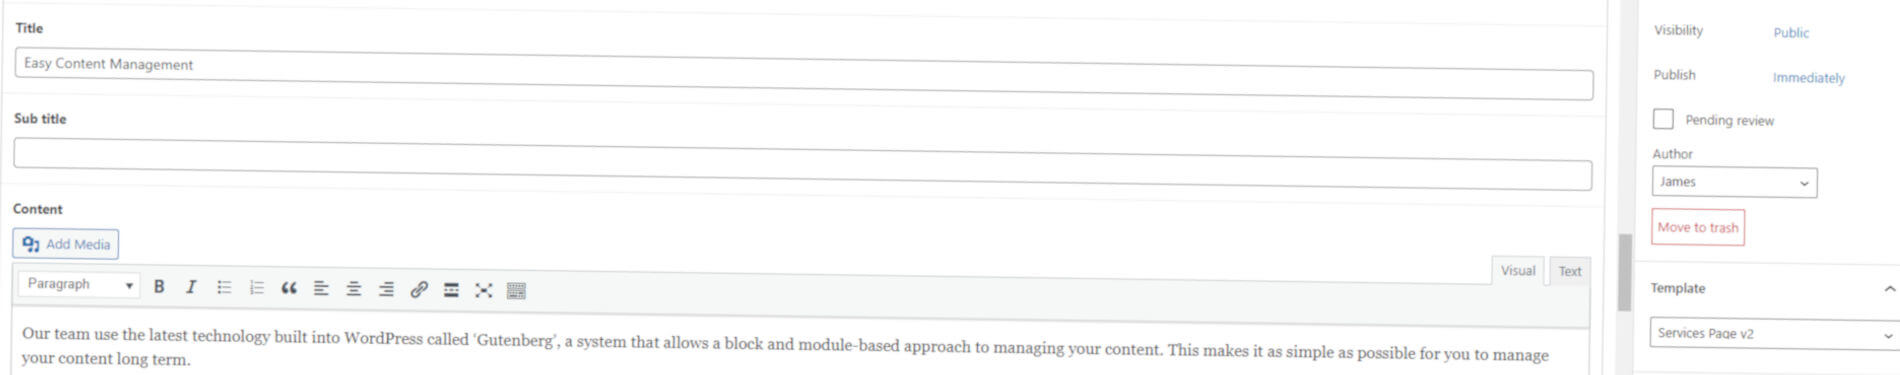 screenshot of adding content to a website via WordPress CMS